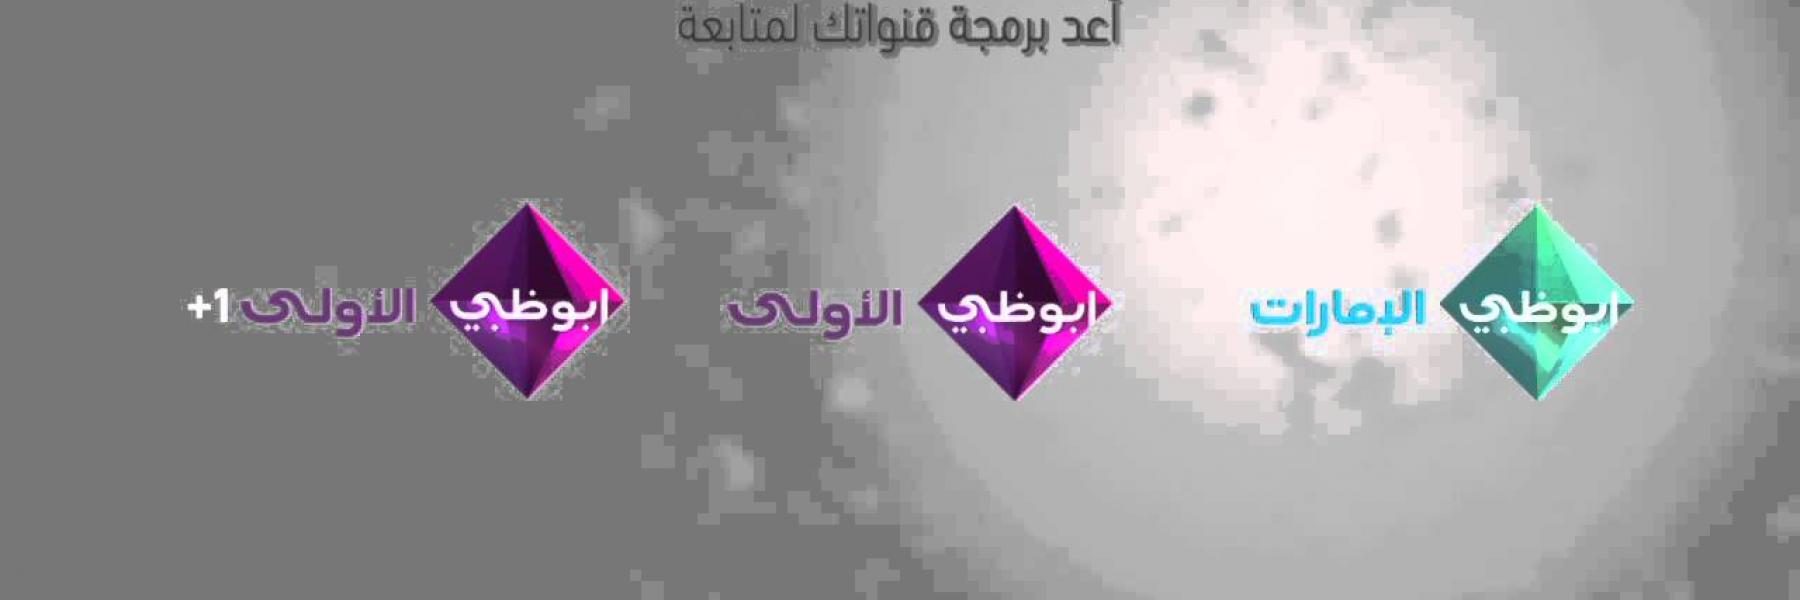 باقة متنوعة من البرامج والمسلسلات المحلية والعربية على "شبكة قنوات تلفزيون أبوظبي" وتطبيق ADTV